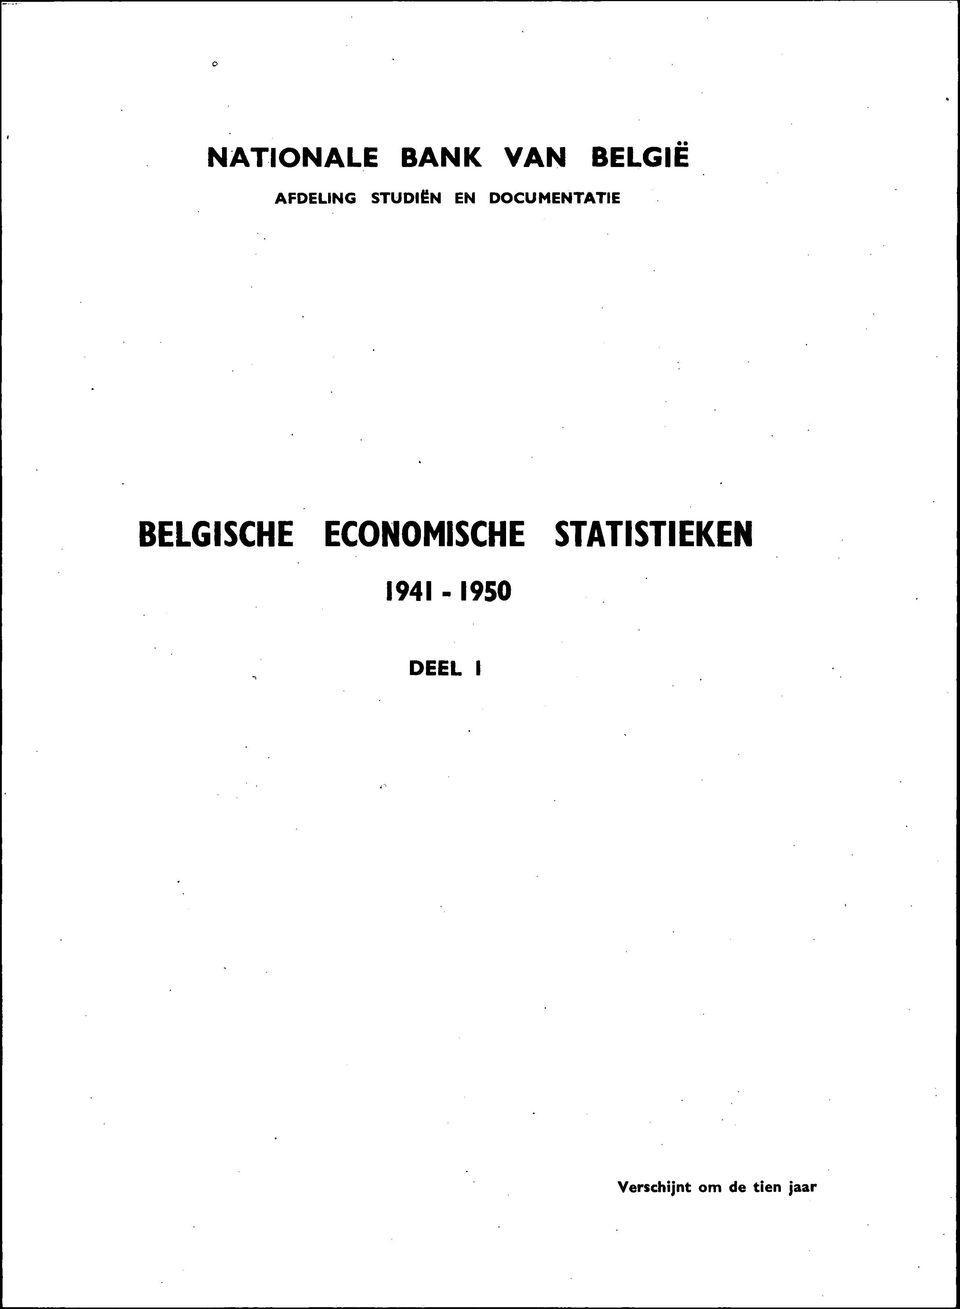 BELGISCHE ECONOMISCHE STATISTIEKEN